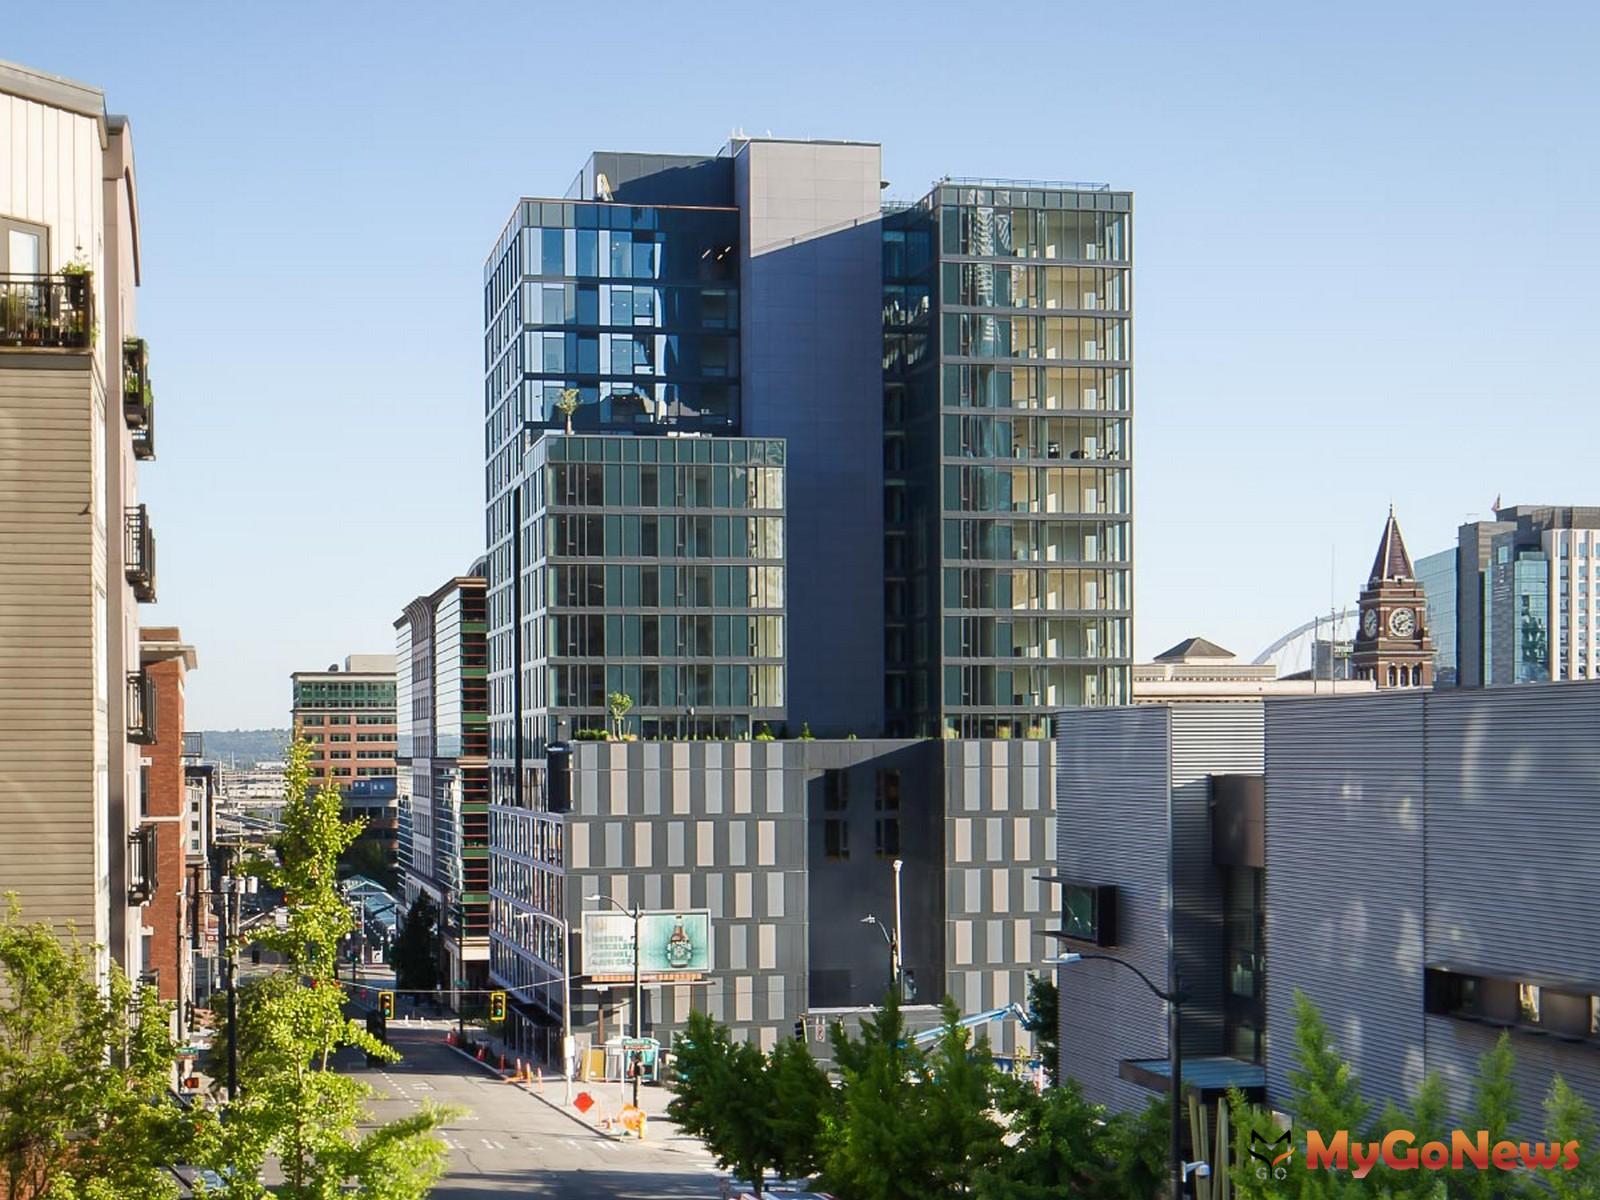 達麗建設美國西雅圖第五大道KODA Fifth Avenue入圍 2021西雅圖房地產協會年度最佳建築物、美國華盛頓州年度最佳建築獎肯定。 MyGoNews房地產新聞 市場快訊